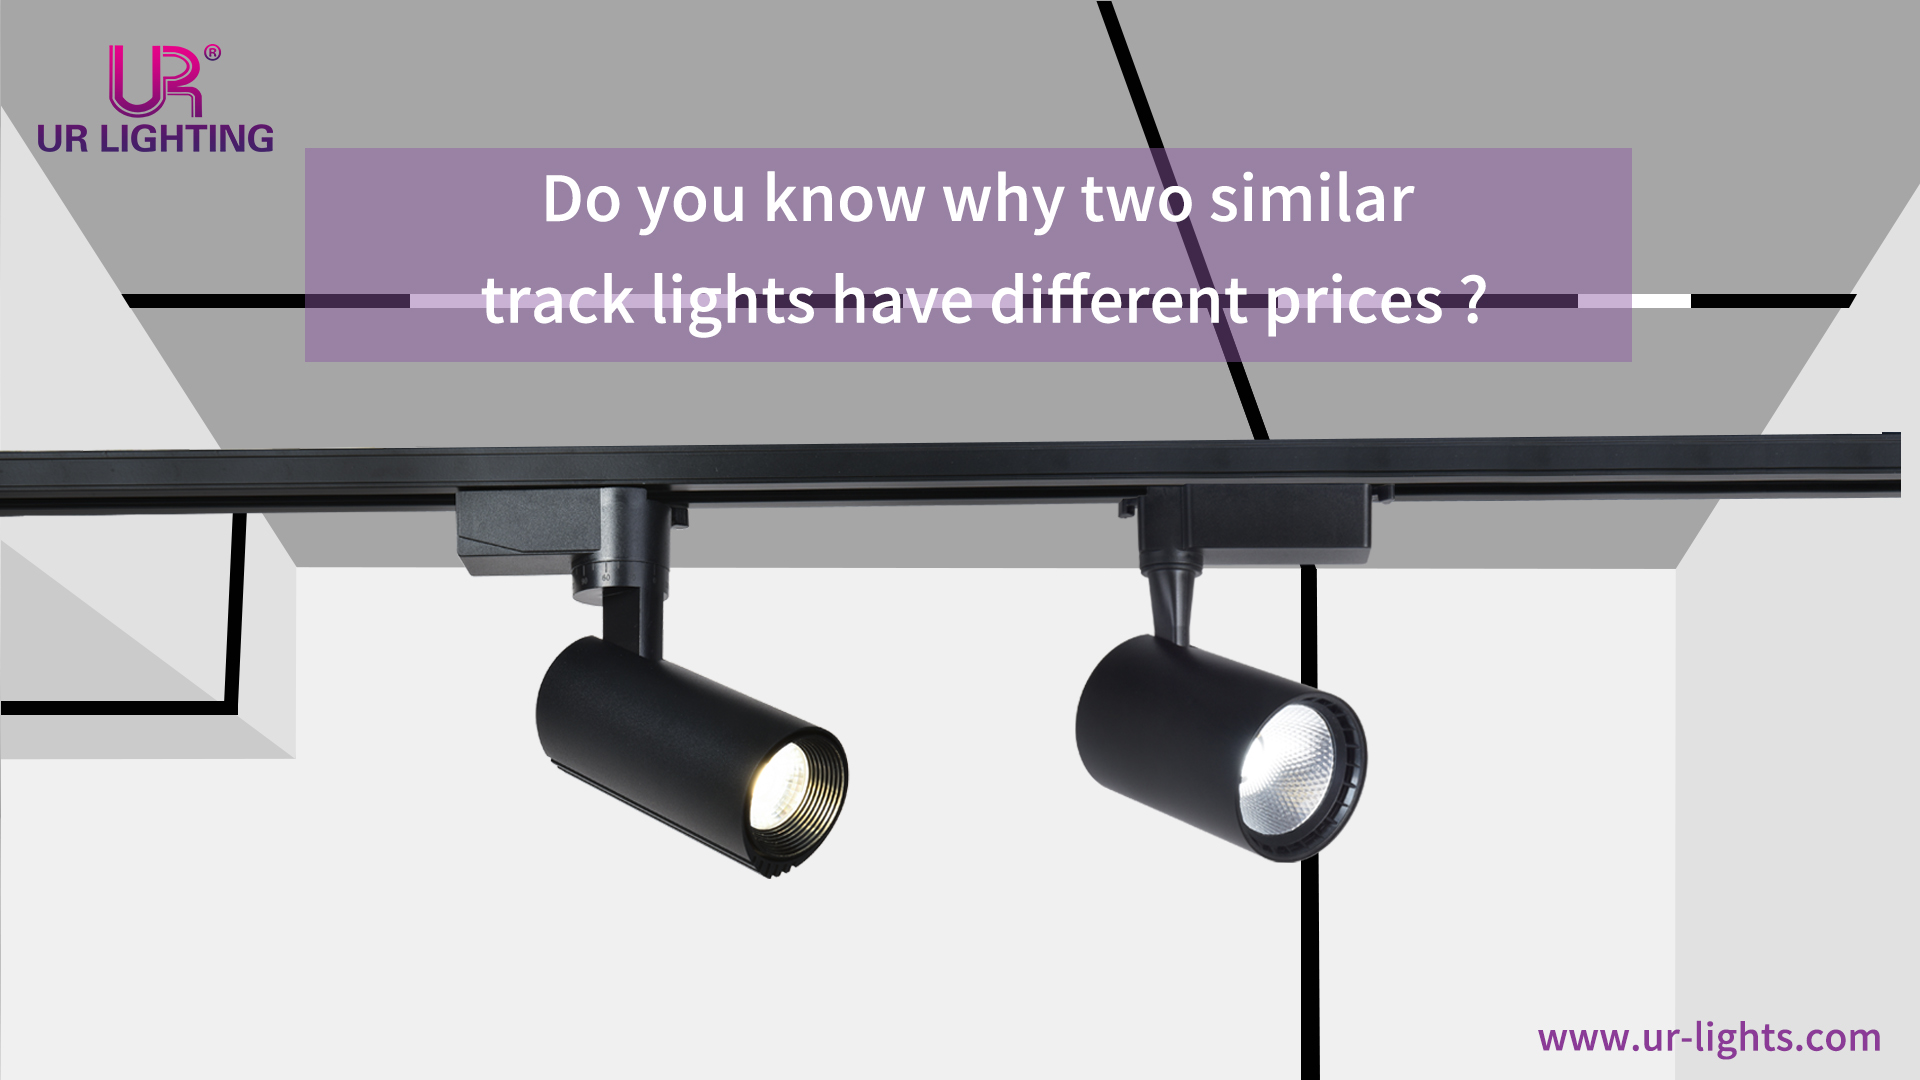 Wissen Sie, warum zwei ähnliche Schienenleuchten unterschiedliche Preise haben?